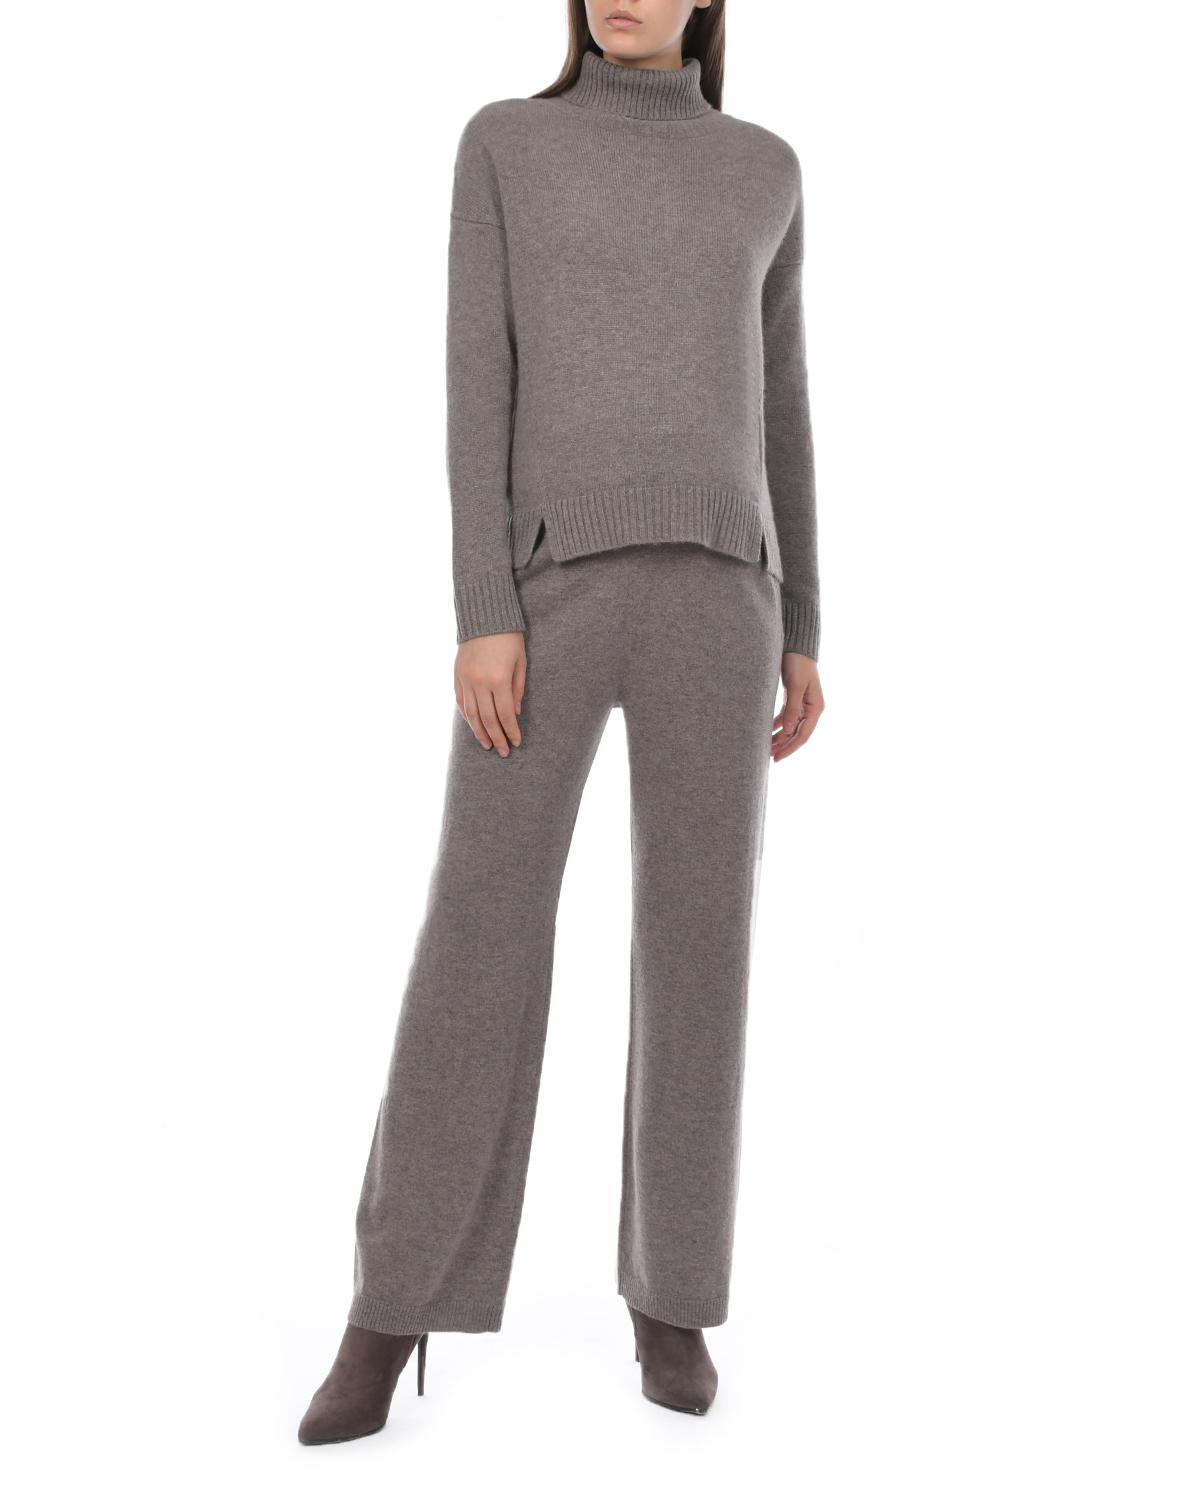 Прямые брюки кофейного цвета FTC Cashmere, размер 42 - фото 4